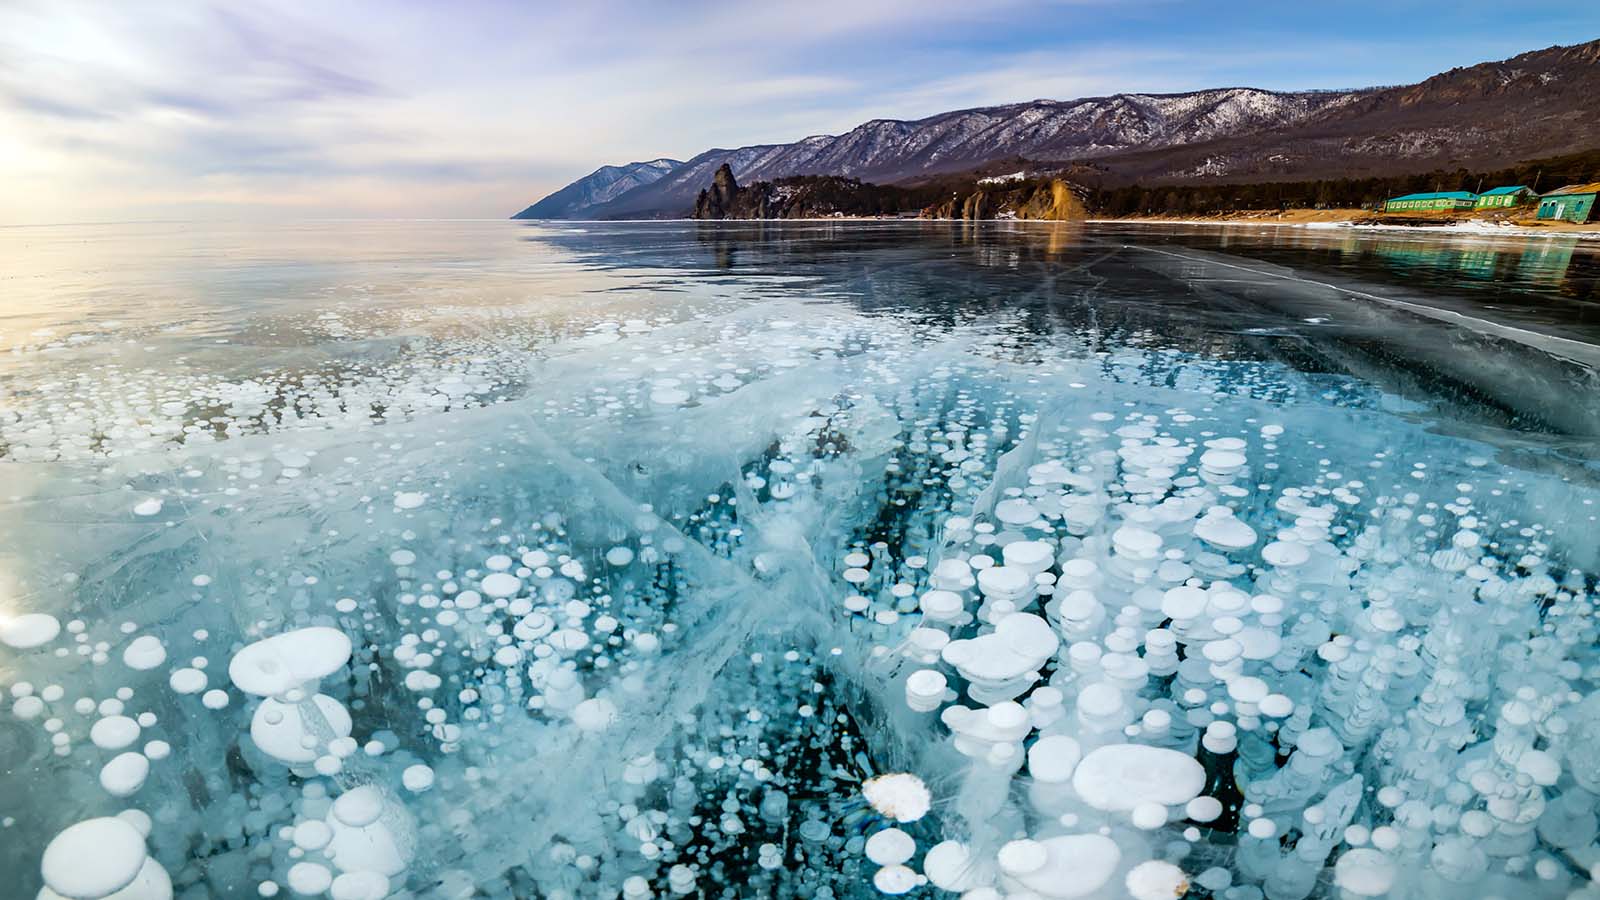 Amazing Lakes - Baikal